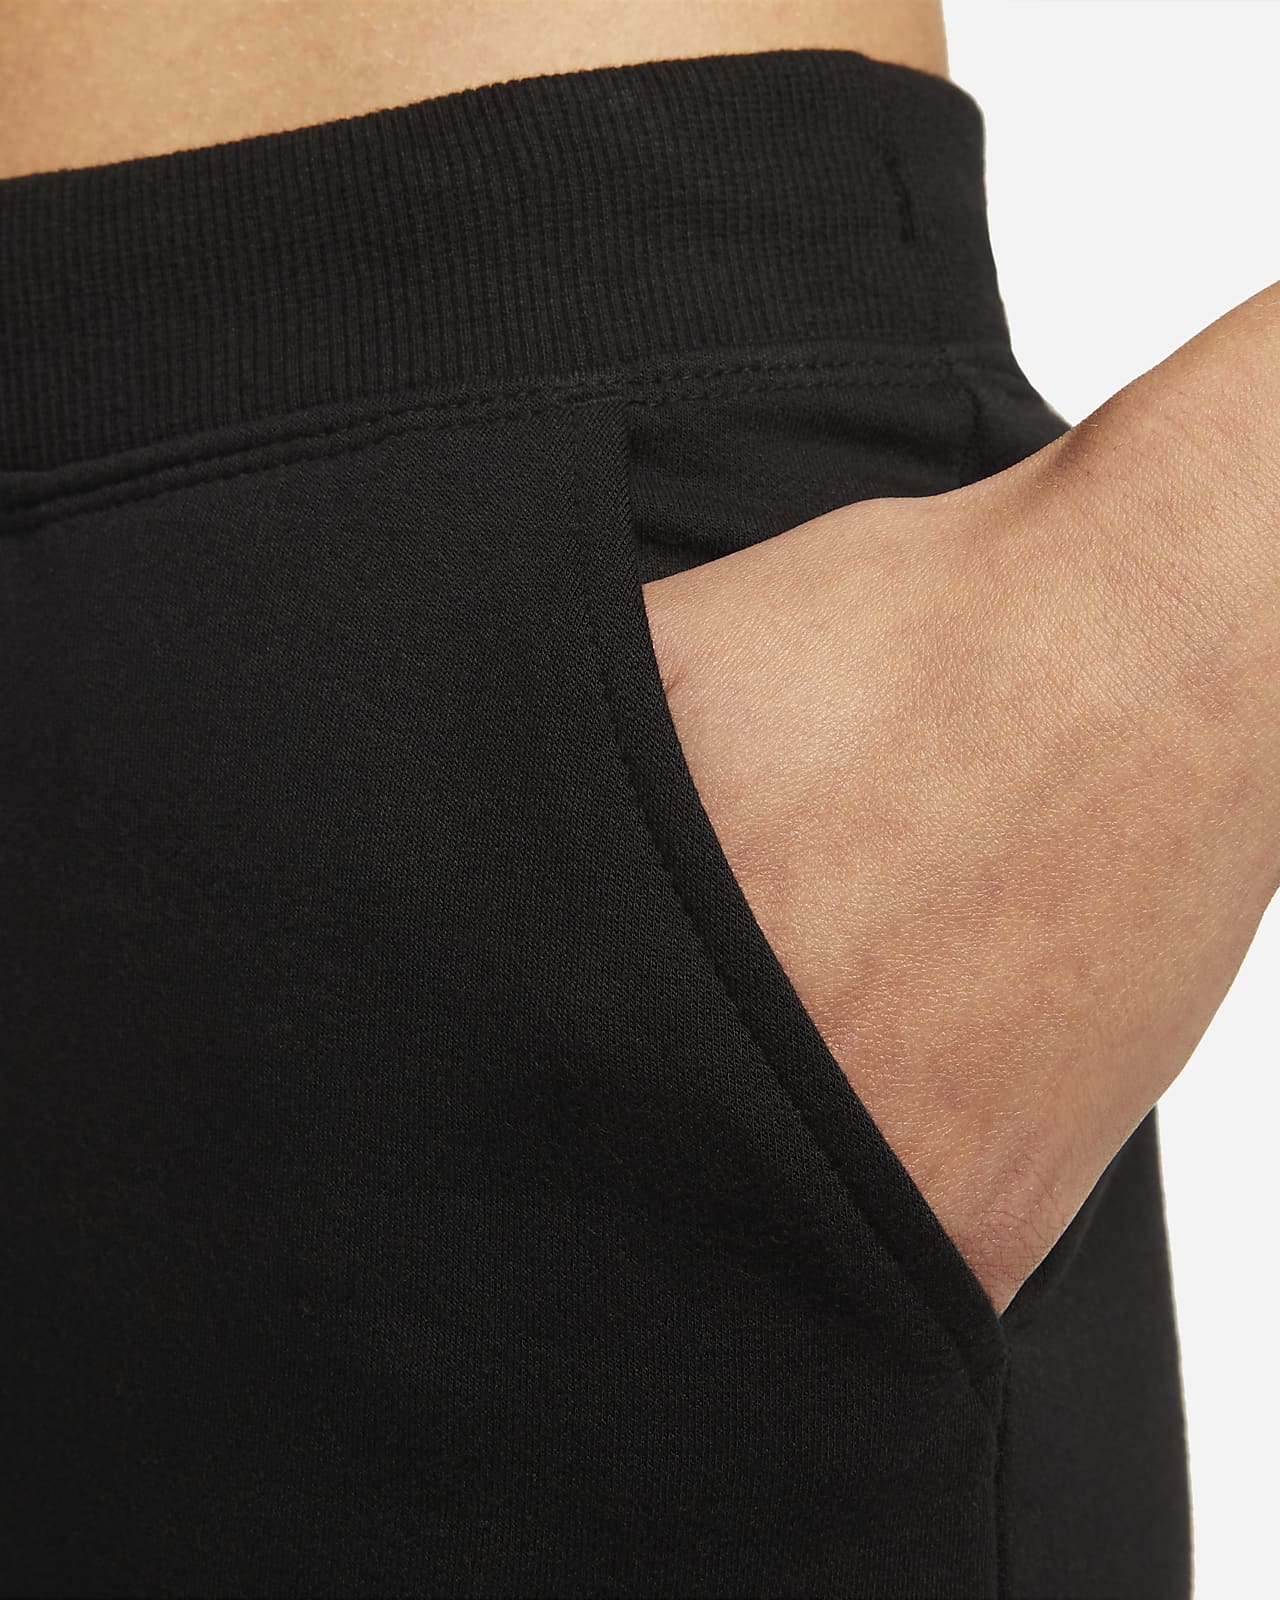 WMNS) Nike Yoga Dri-FIT Pant 'Black' DM7037-010 - KICKS CREW